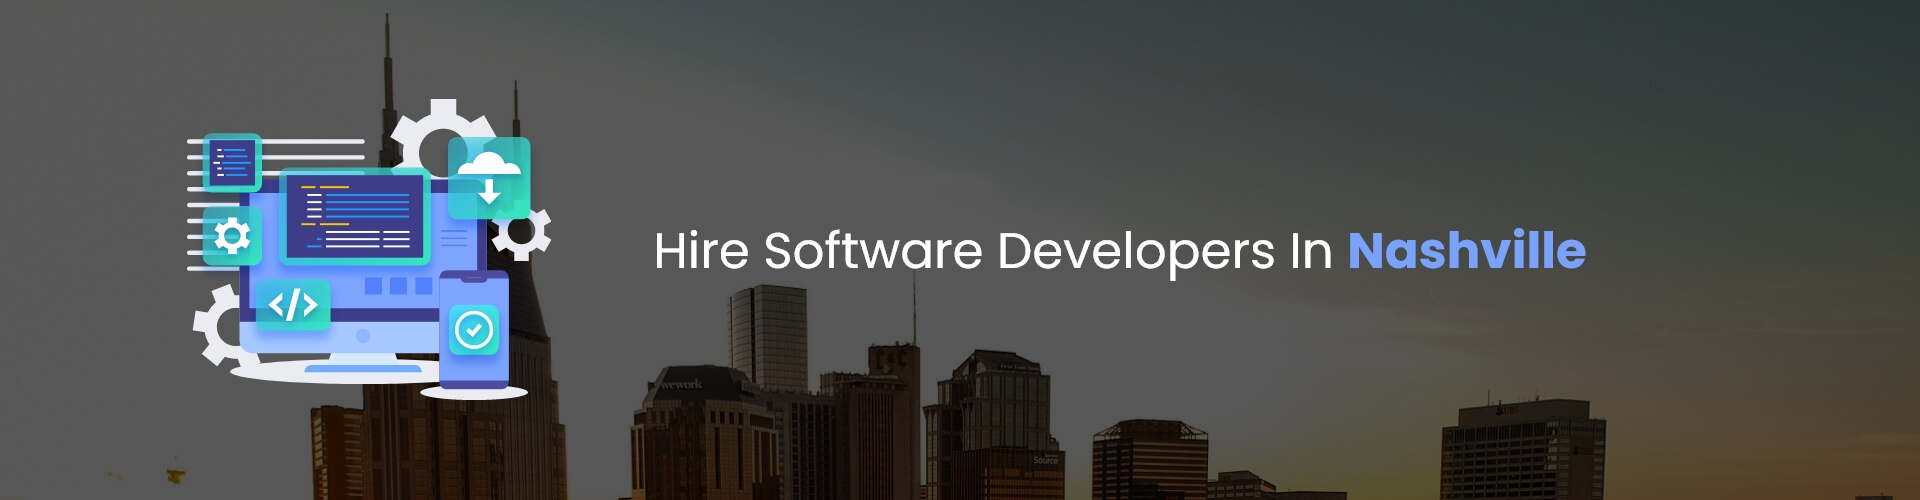 hire software developers in nashville